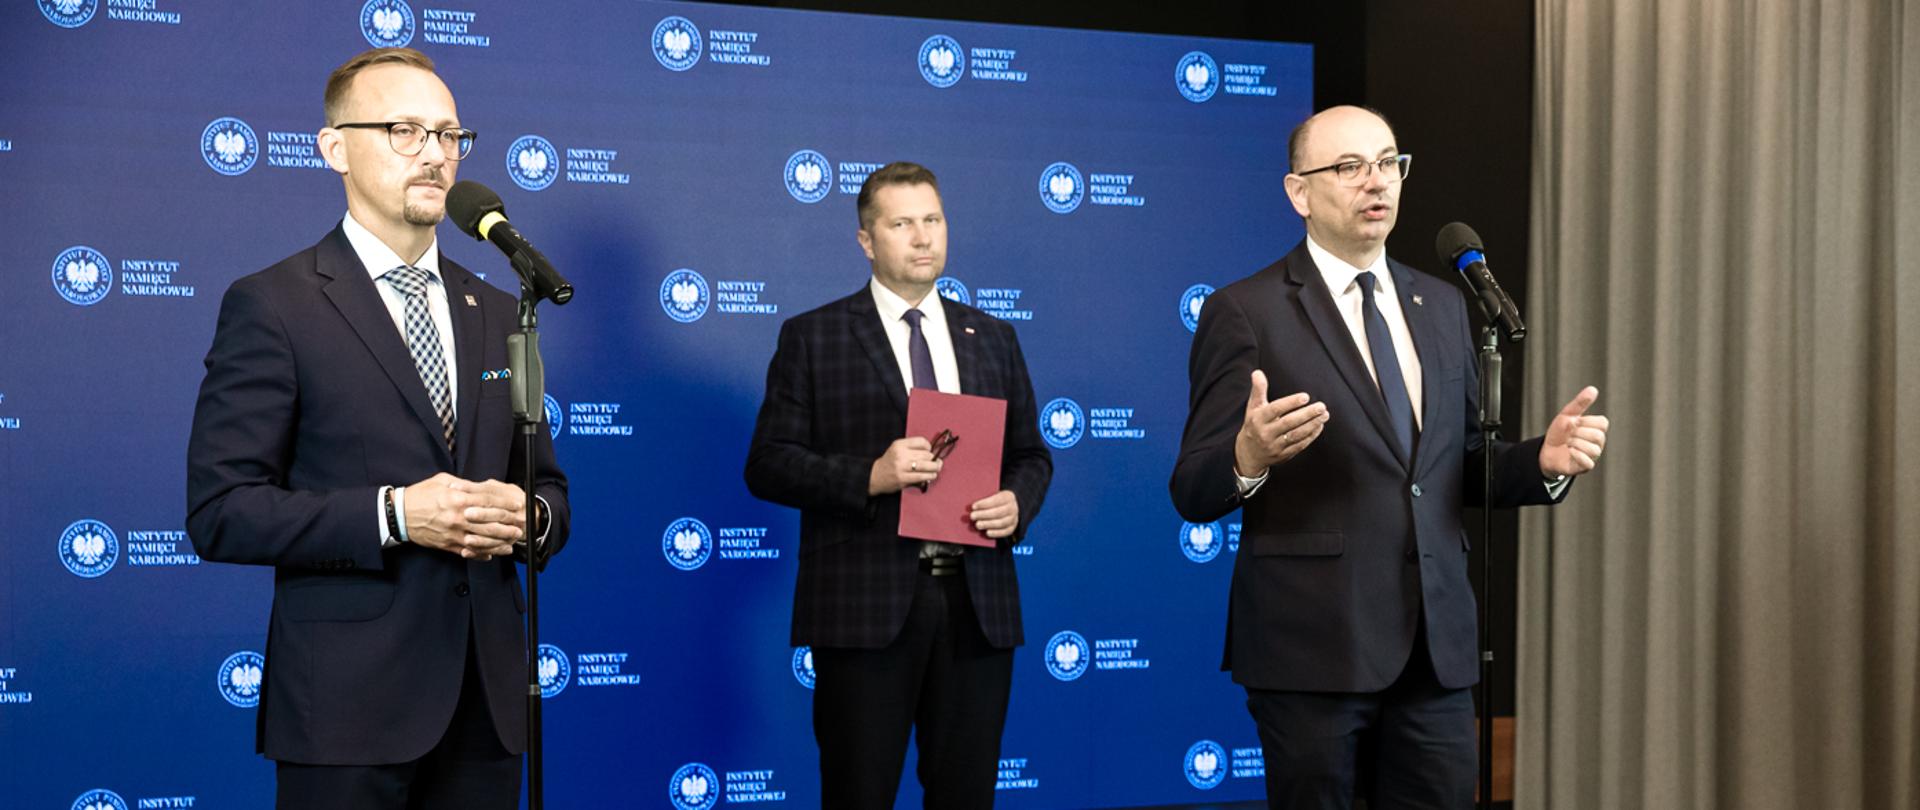 Minister Czarnek stoi za dwoma mężczyznami w garniturach, którzy mają przed sobą mikrofony na stojakach, trzyma w ręku fioletową teczkę, za nimi niebieska ściana.